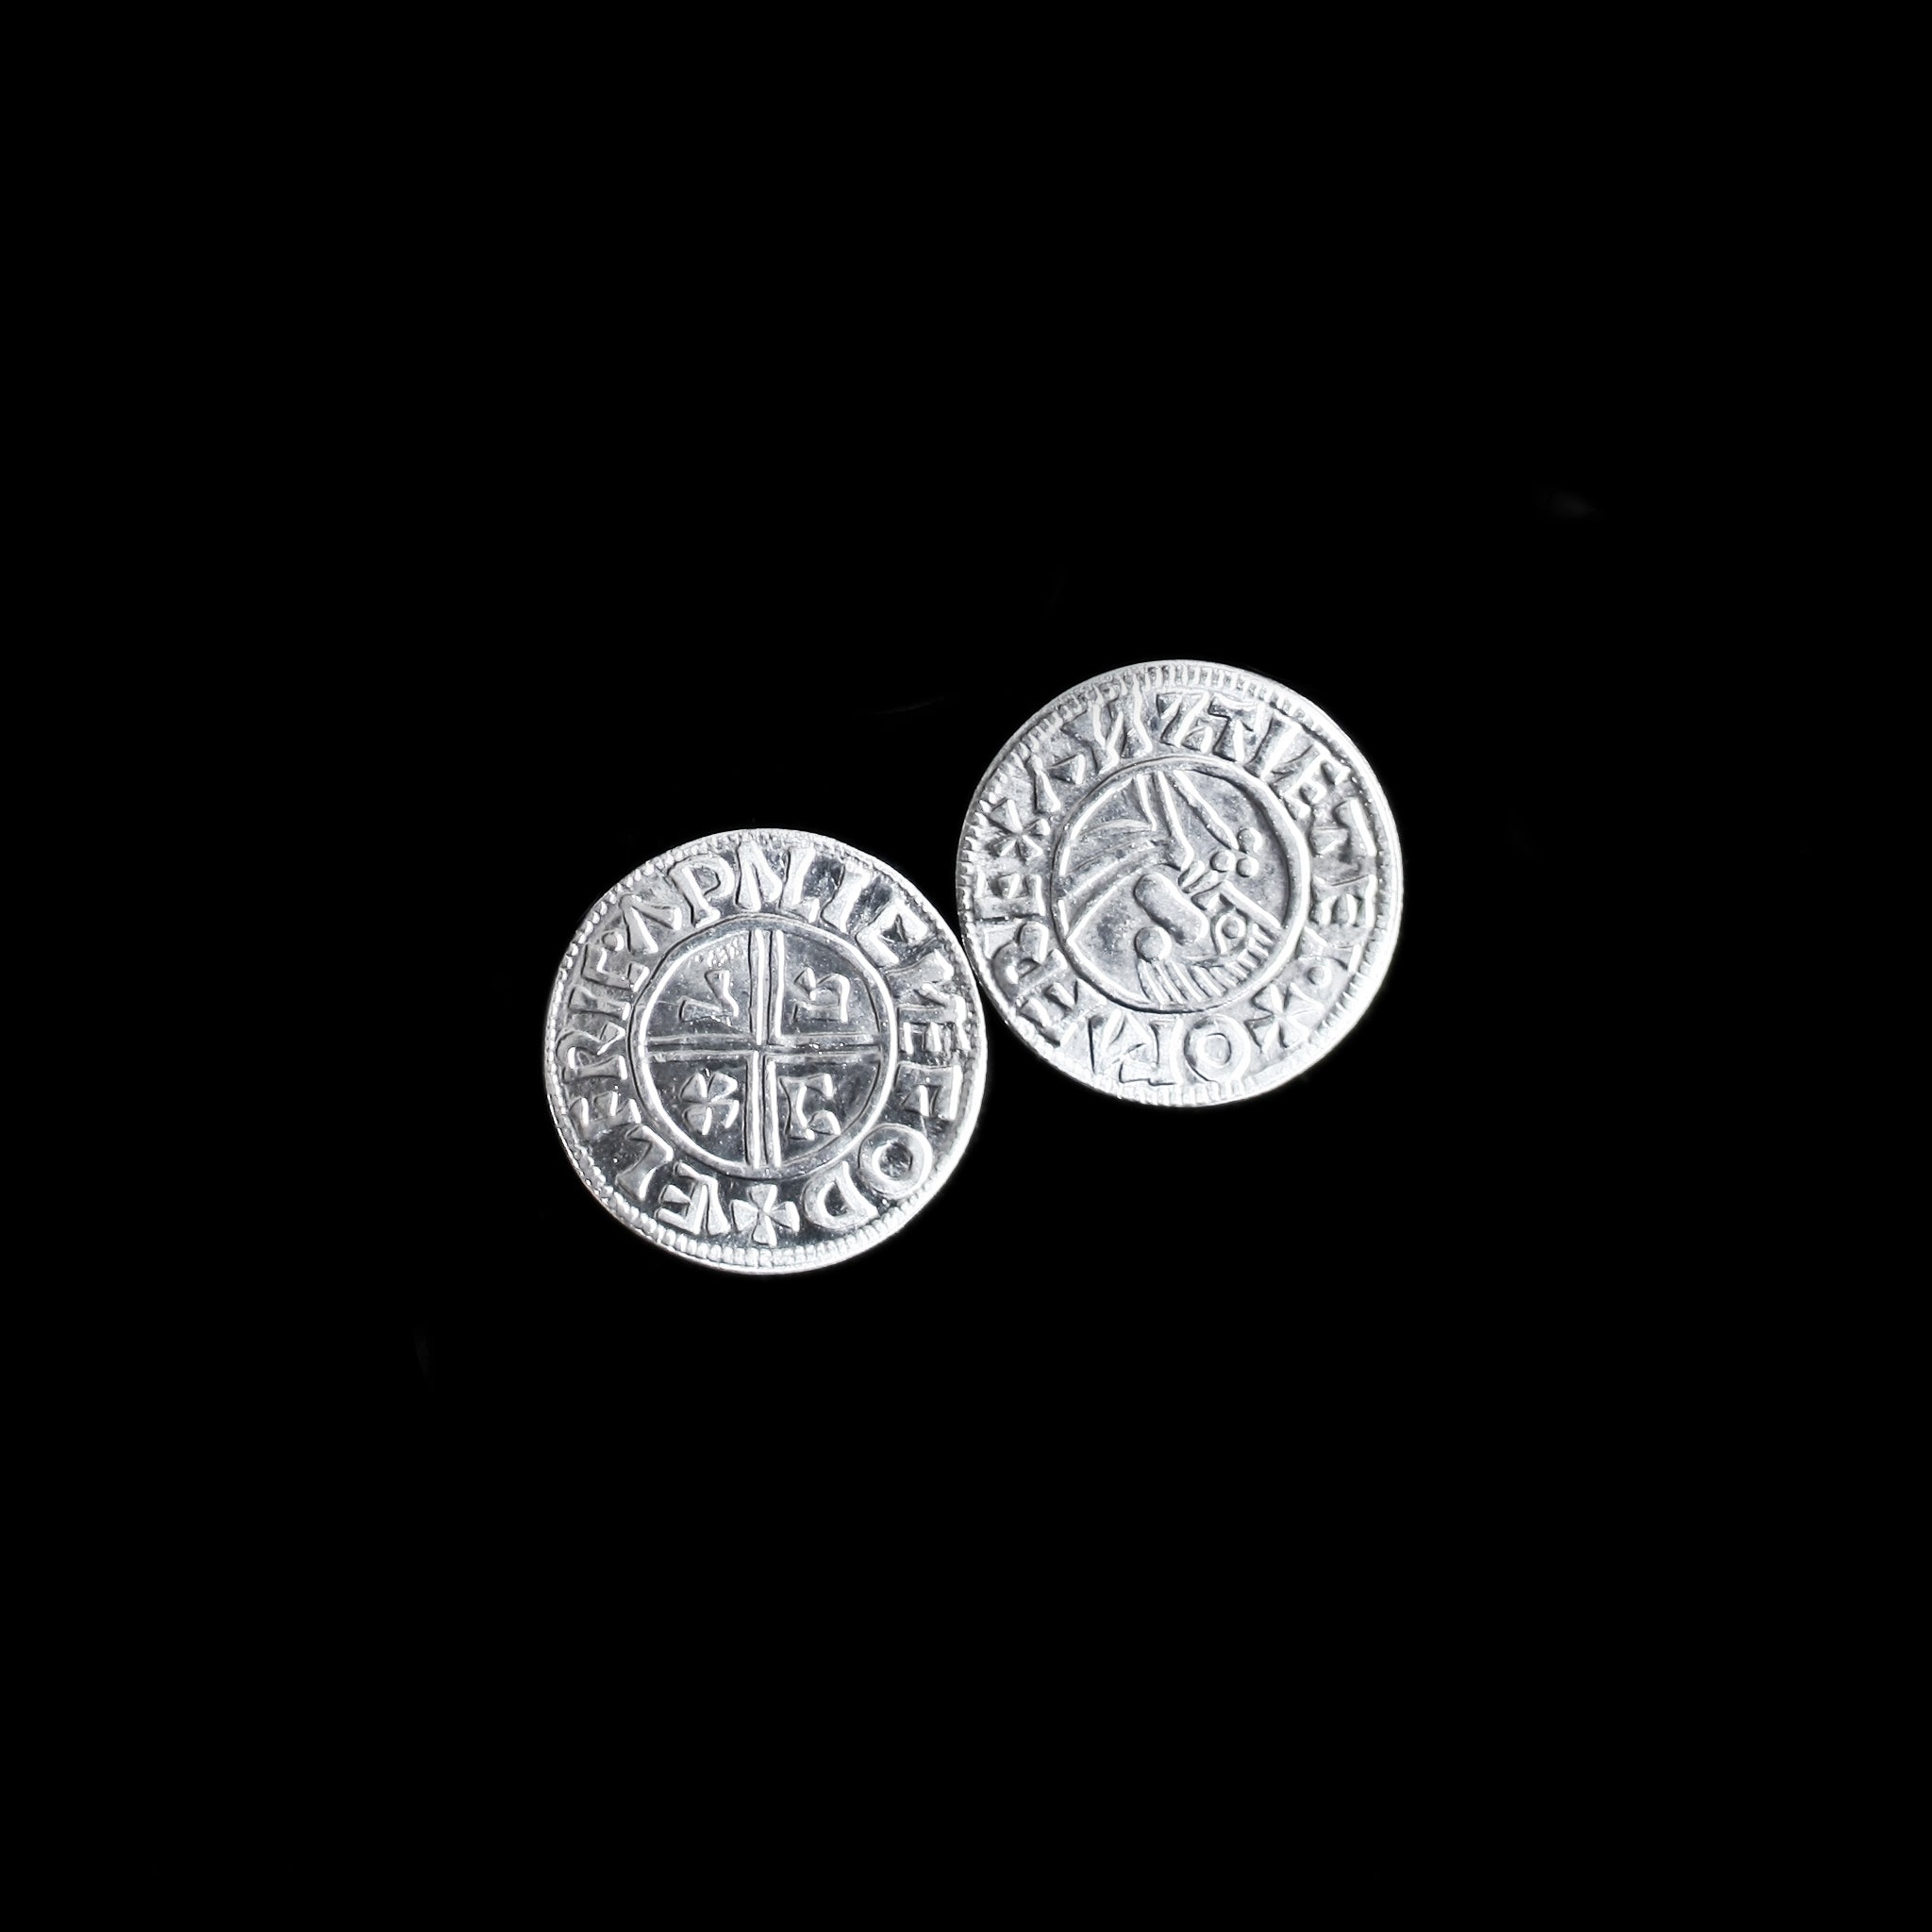 Aethelred-Replika sächsischer Münzen aus Winchester